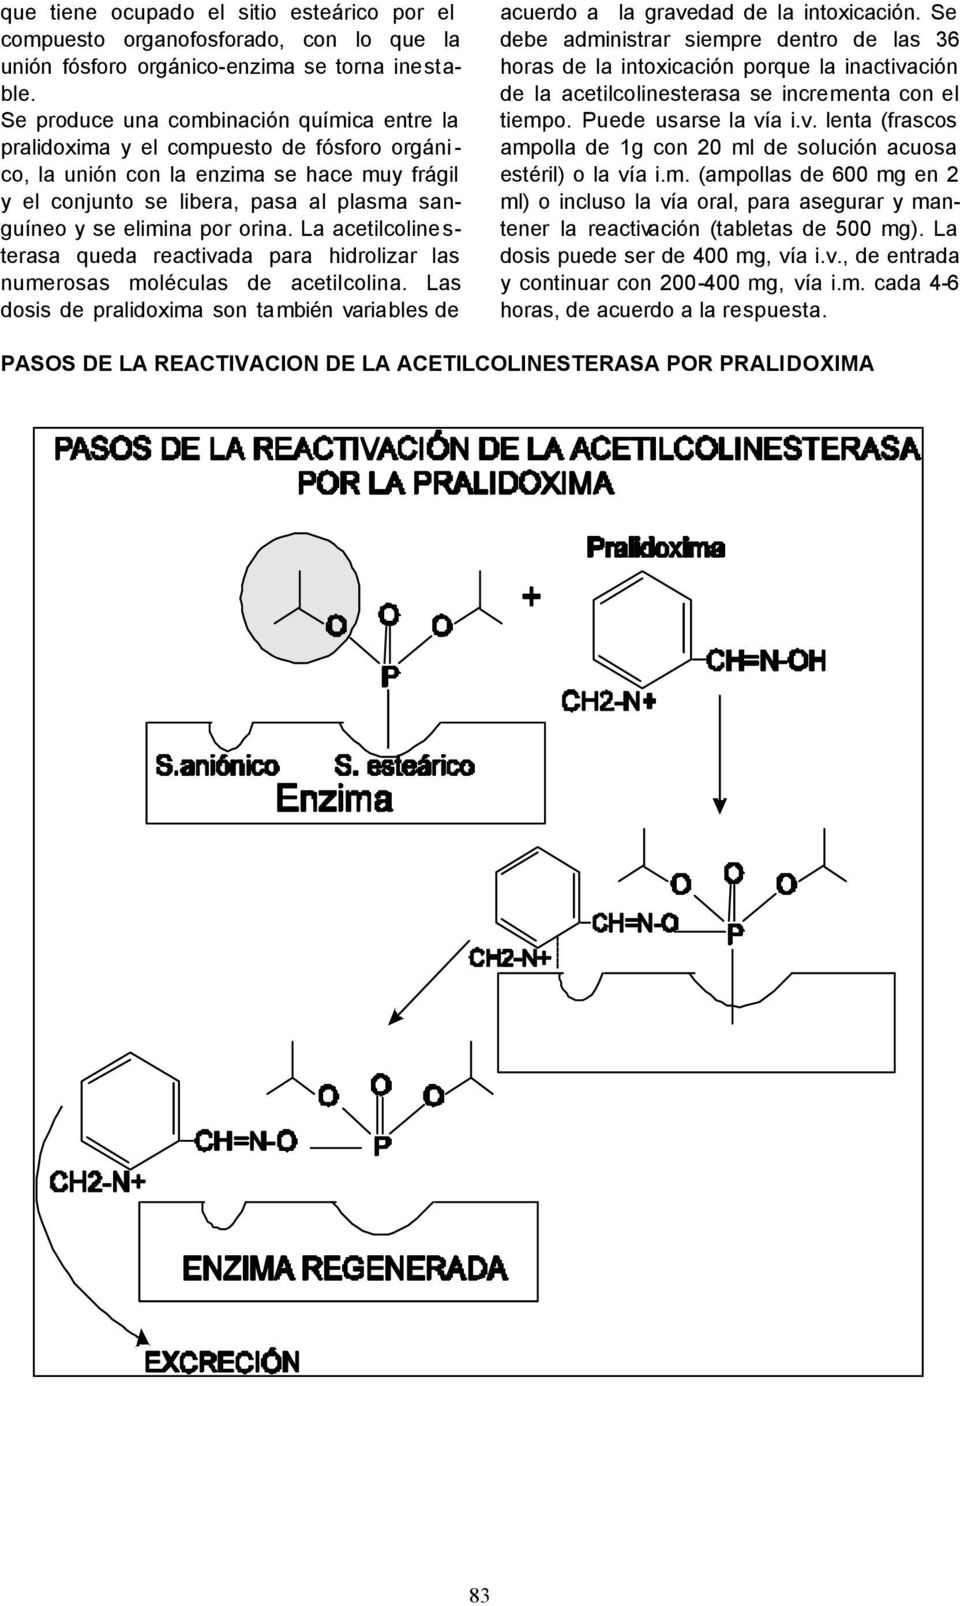 por orina. La acetilcolinesterasa queda reactivada para hidrolizar las numerosas moléculas de acetilcolina. Las dosis de pralidoxima son también variables de acuerdo a la gravedad de la intoxicación.